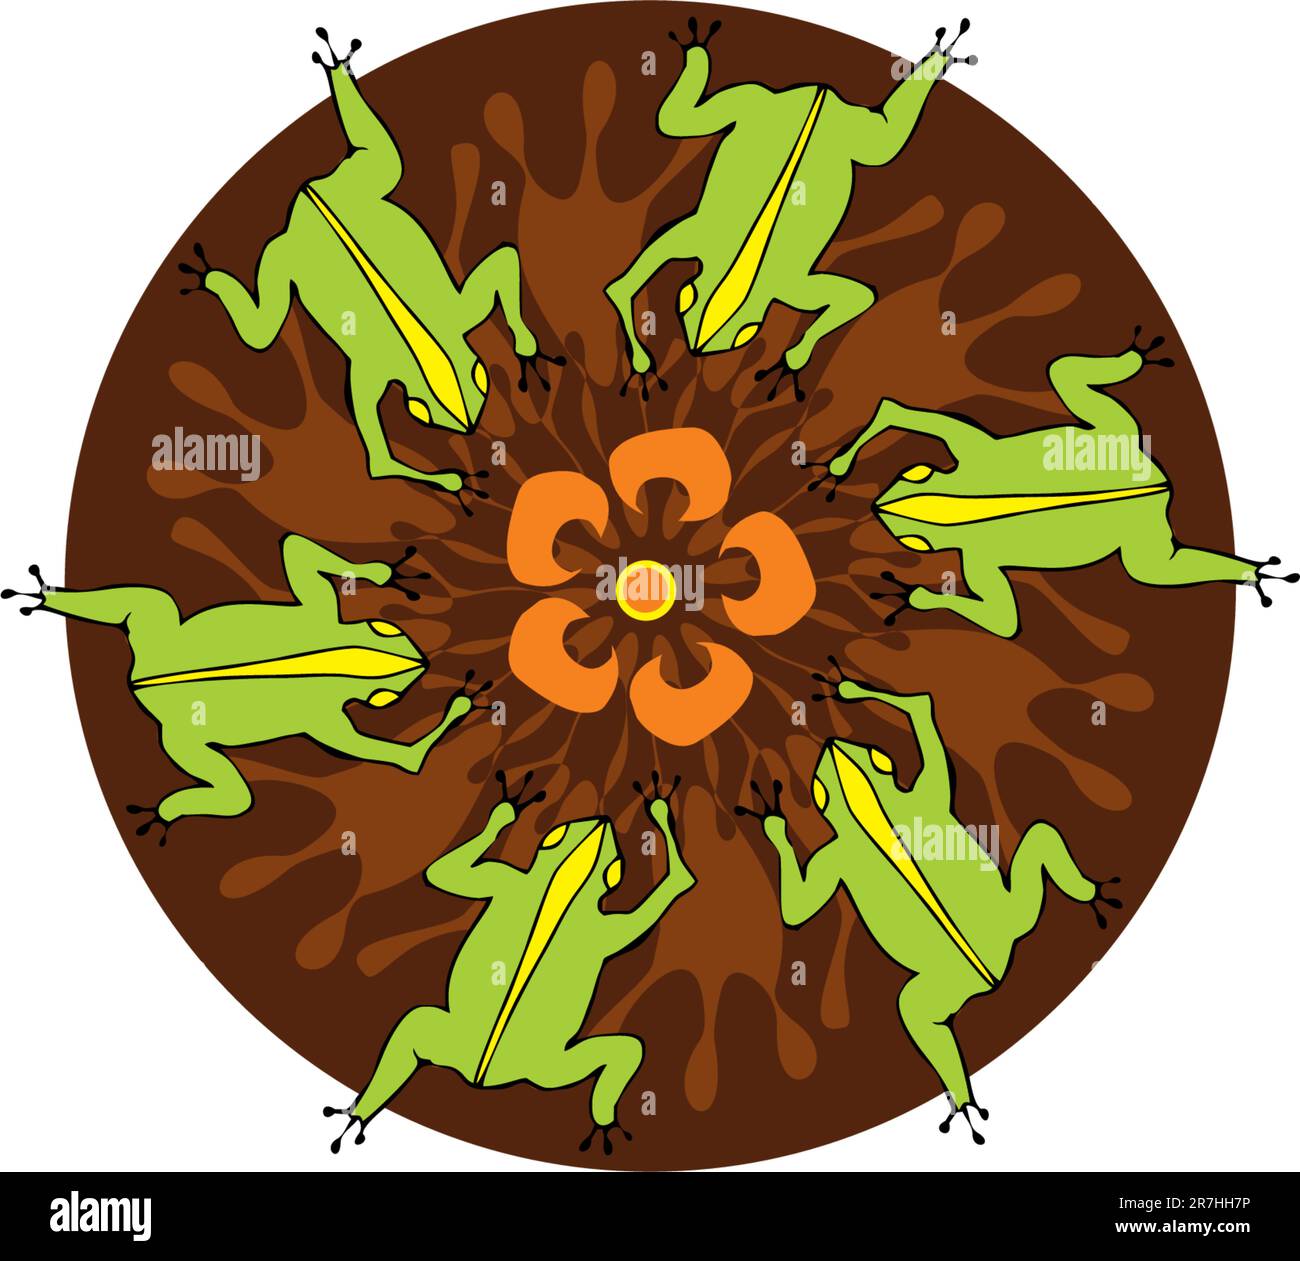 Les grenouilles vertes sont devenues un cercle sur une fleur Illustration de Vecteur